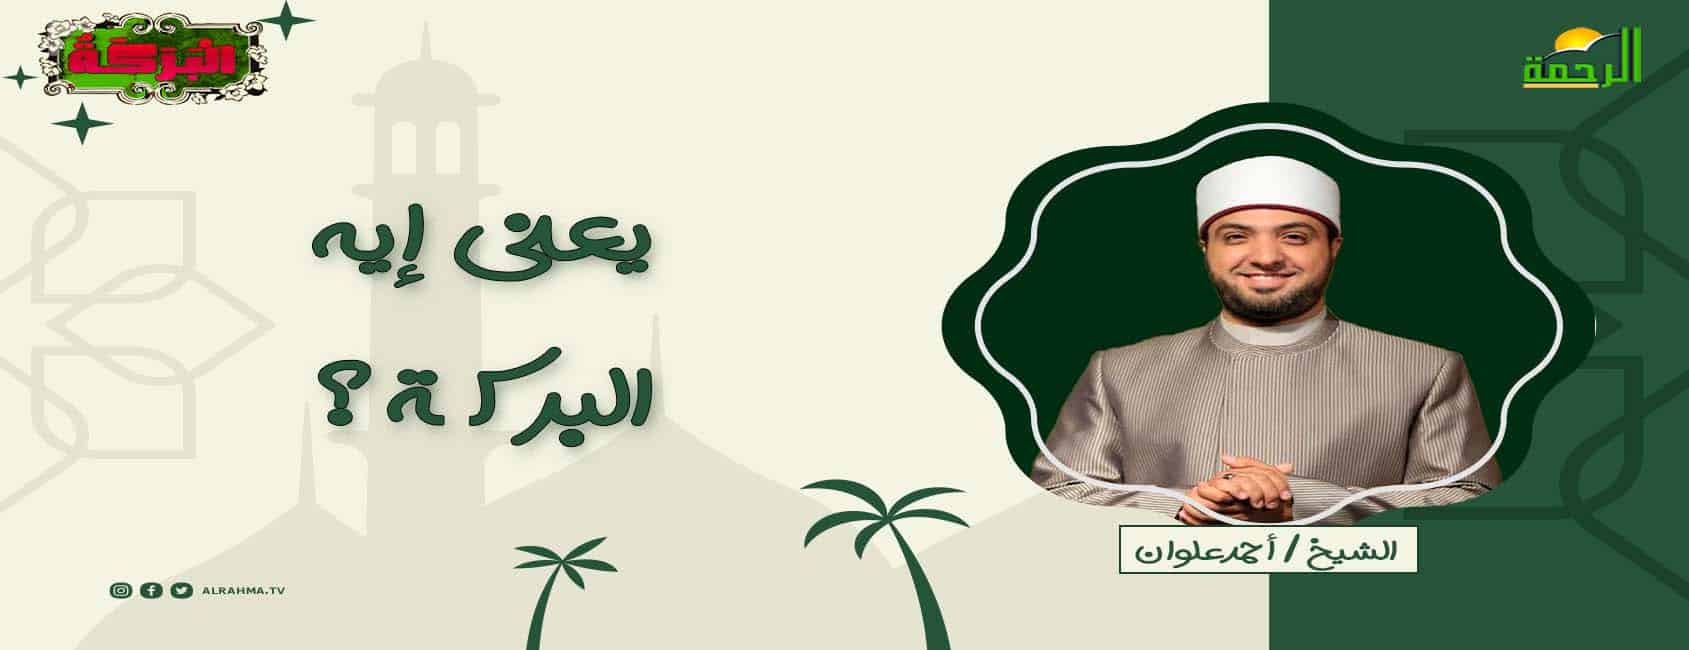 برنامج البركة للشيخ أحمد علوان